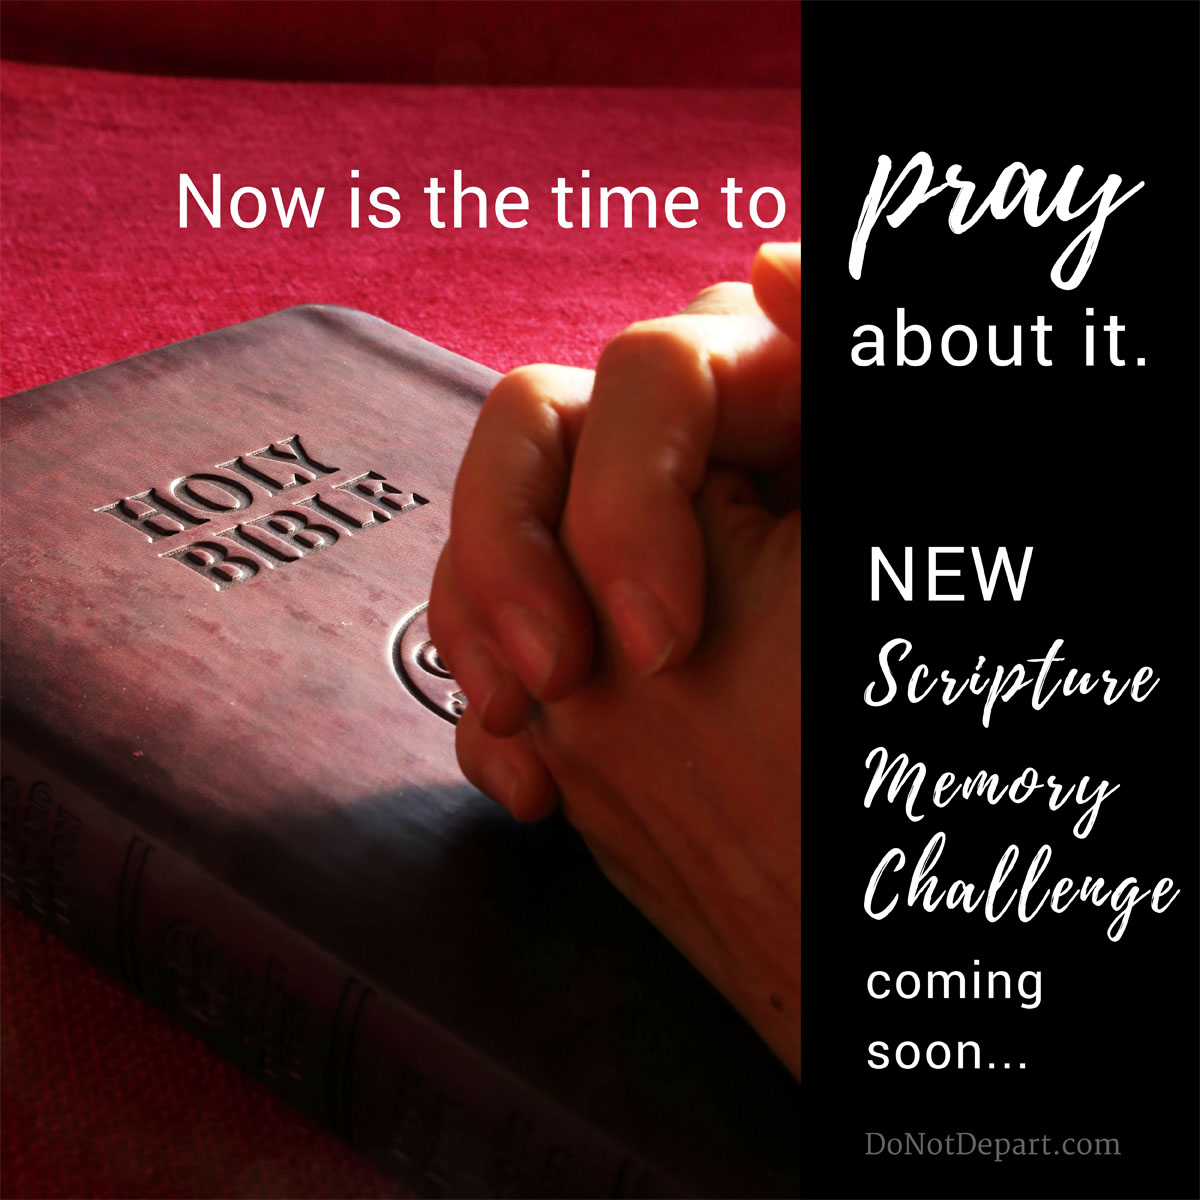 New Scripture Memory Challenge